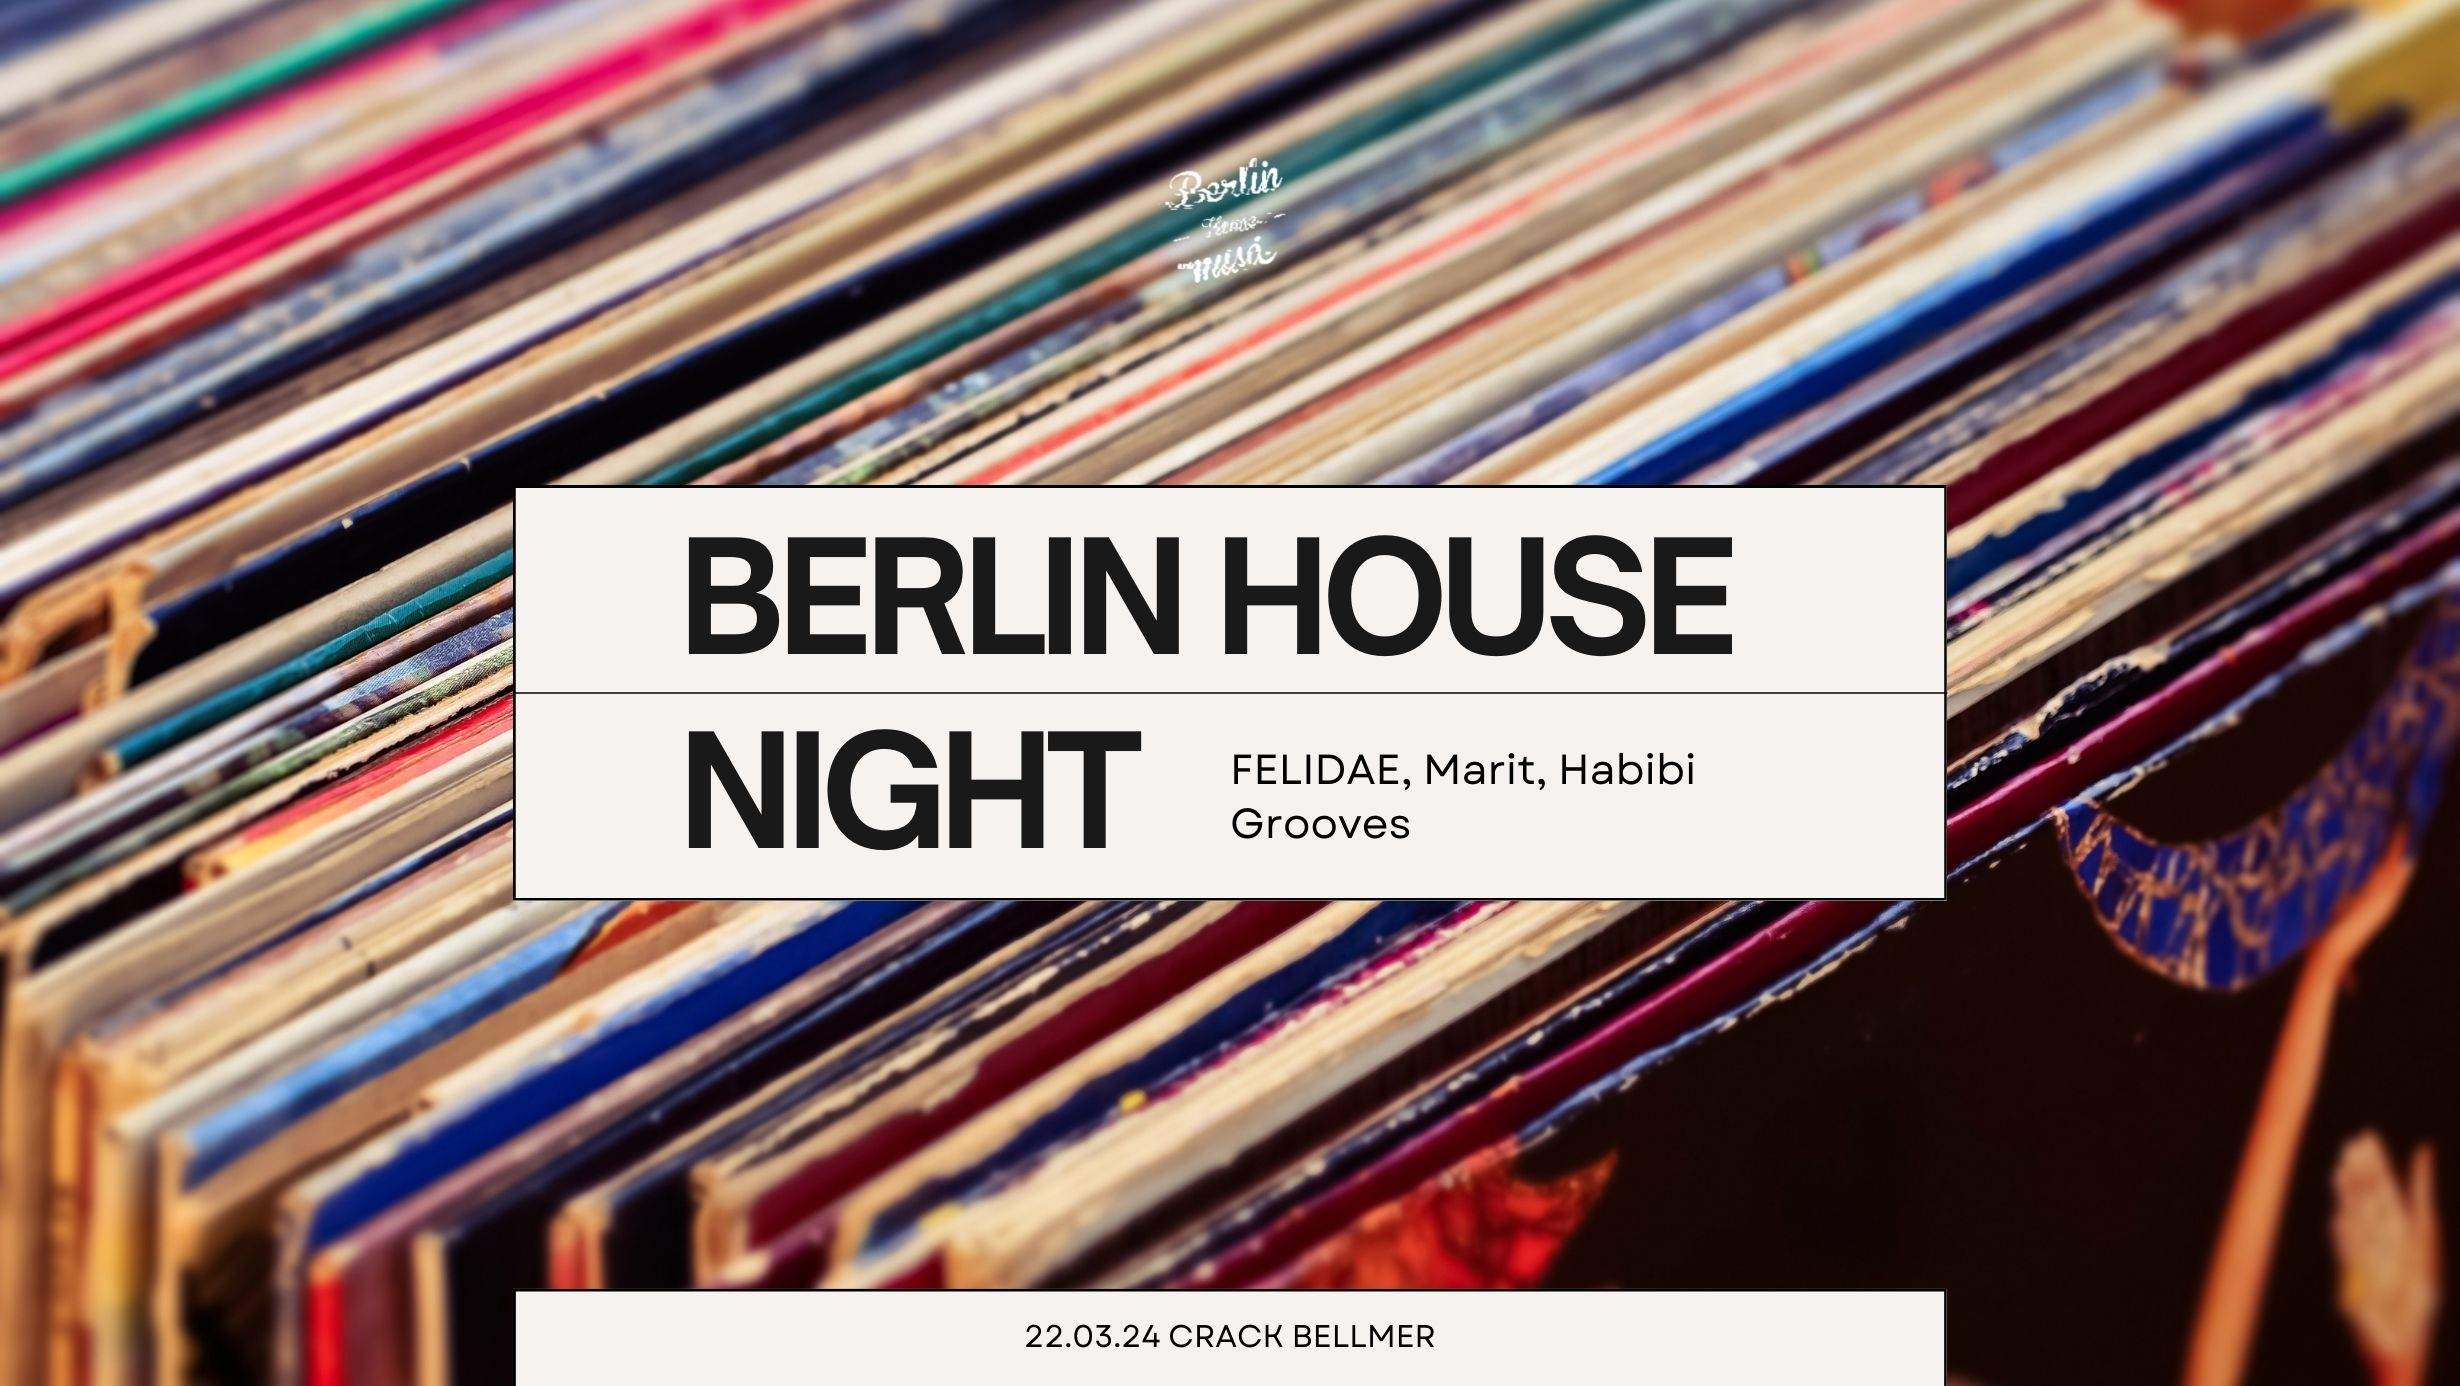 Berlin House Night - フライヤー表